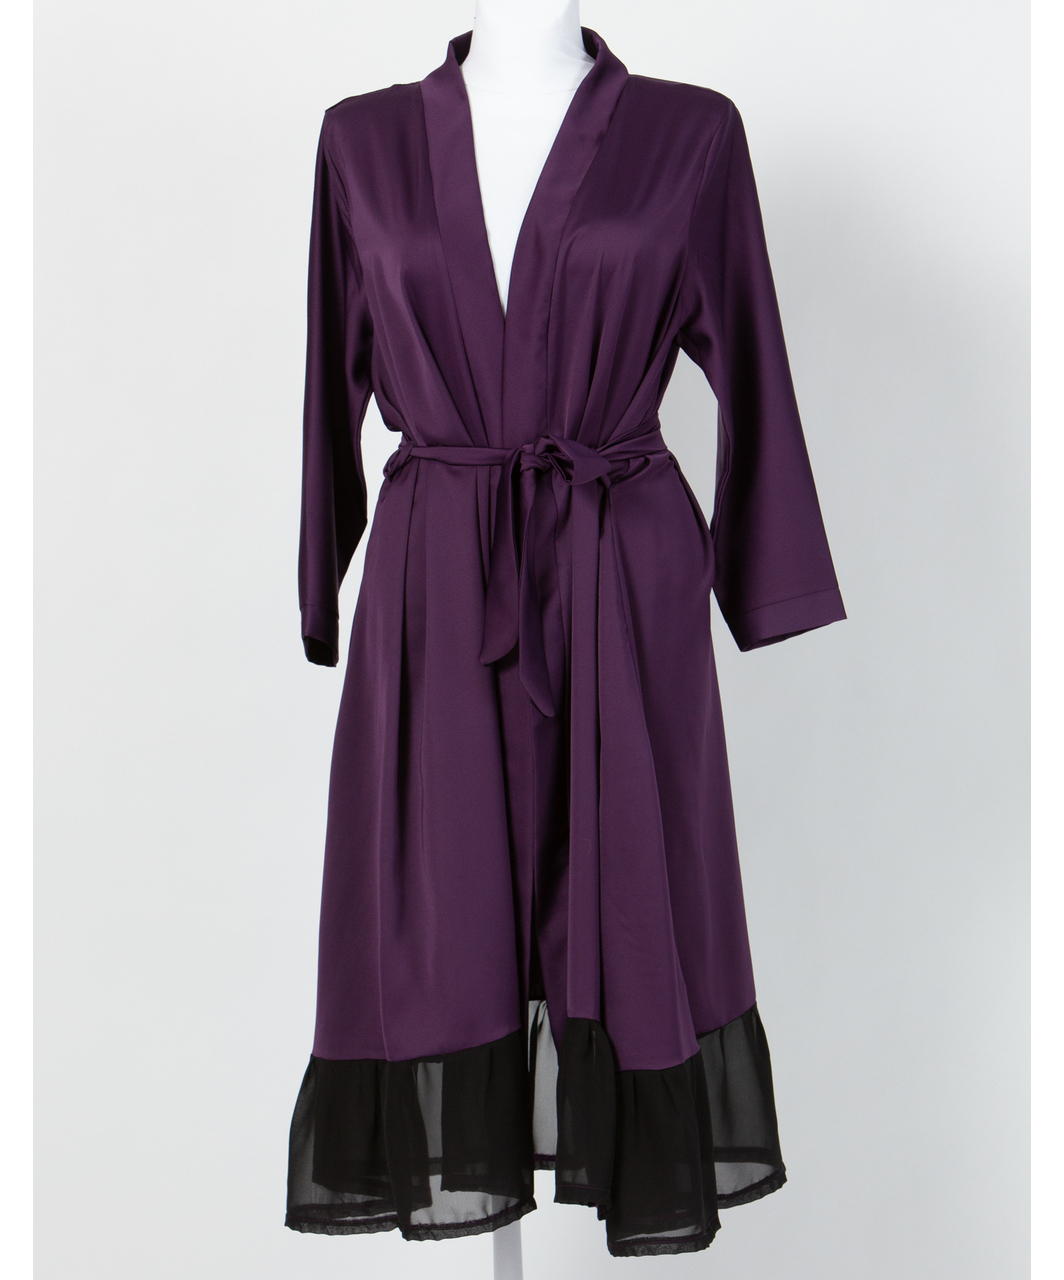 MAKE Dark Purple Robe with Black Chiffon Ruffles